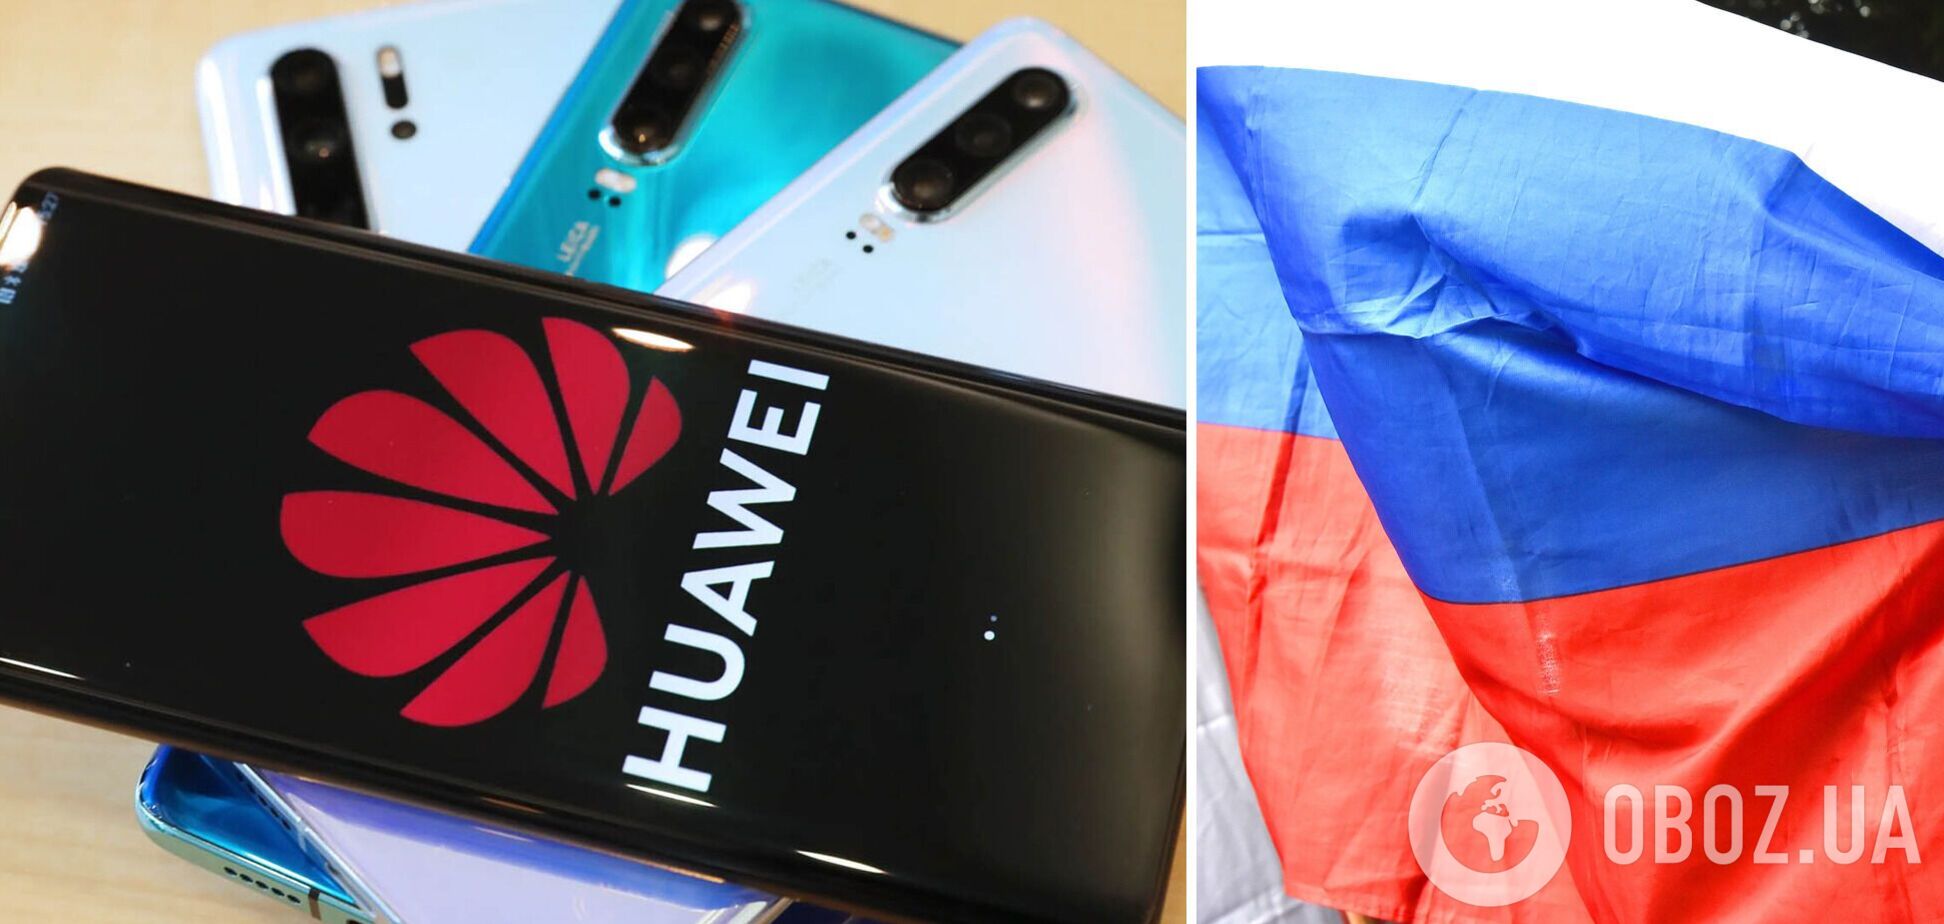 Huawei закрыл маркетплейс в РФ без объяснения причин